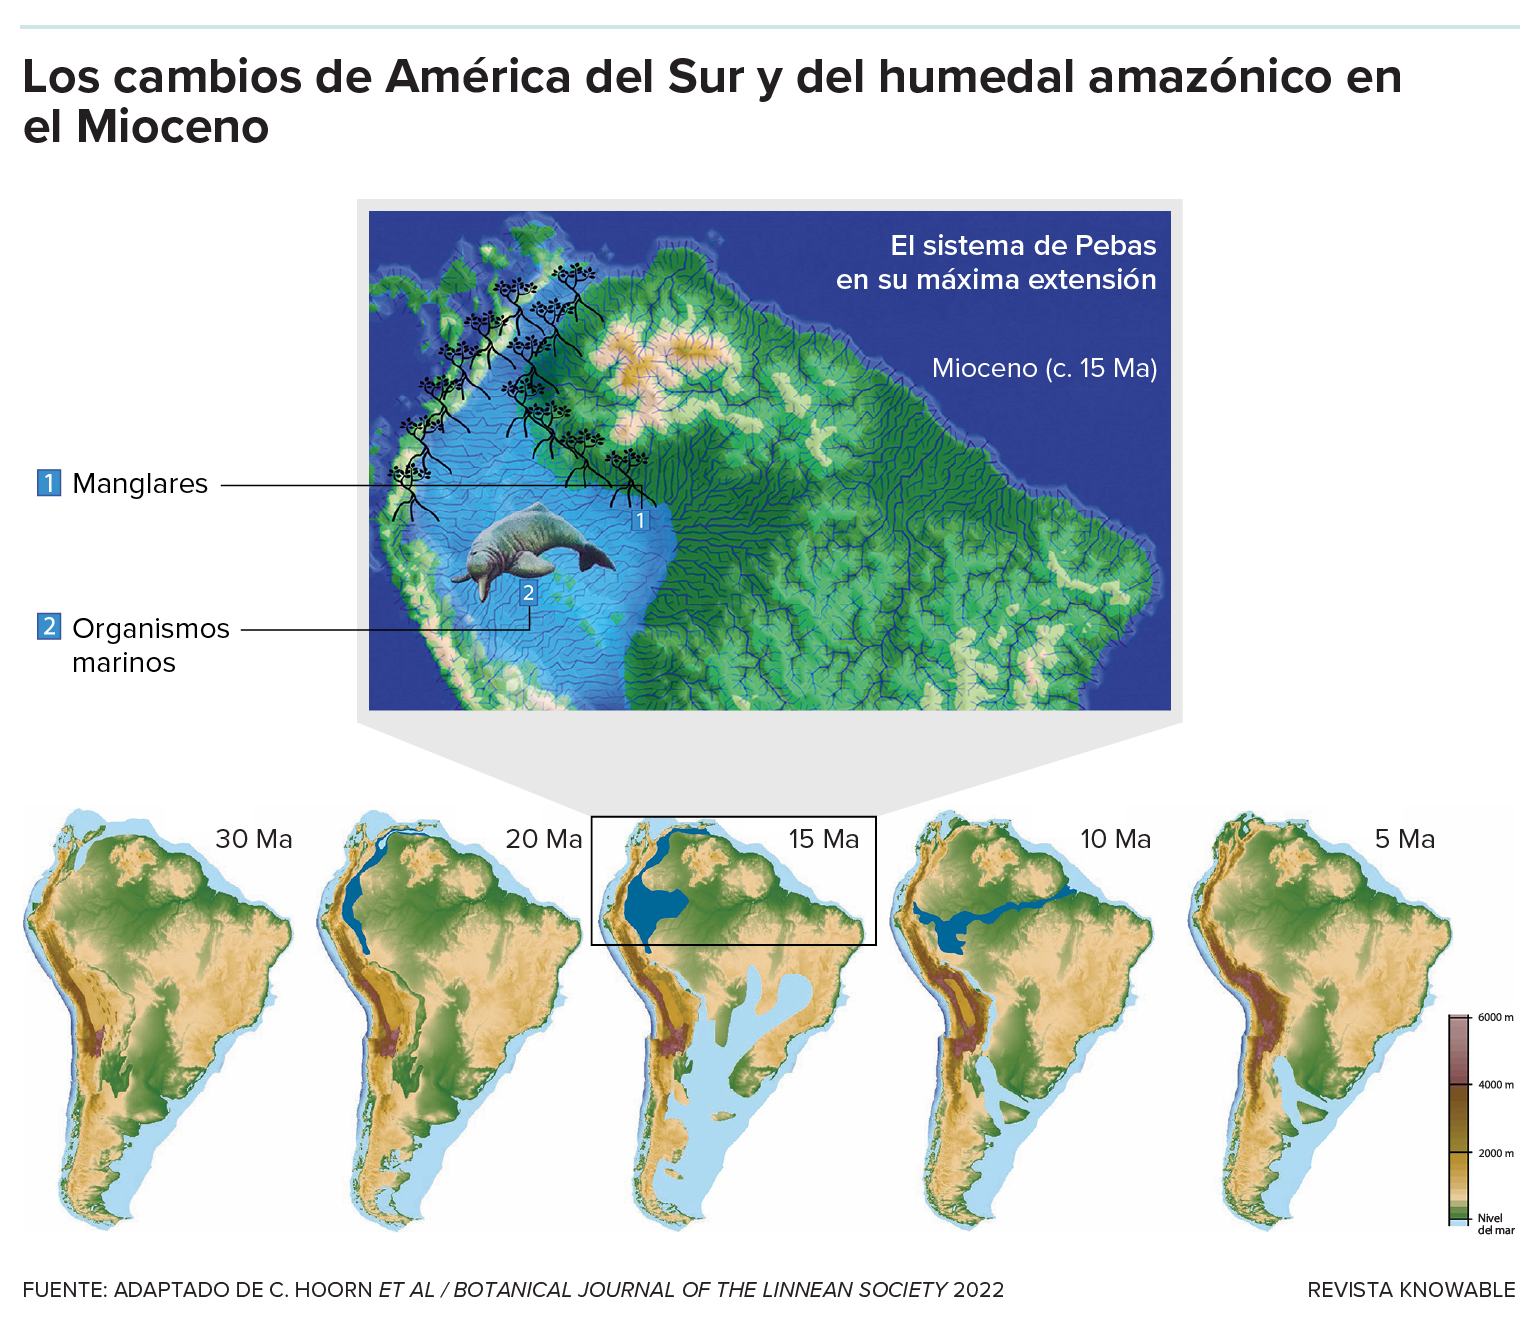 Reconstrucción paleogeográfica de América del Sur y del humedal amazónico del Mioceno. La imagen superior muestra una reconstrucción del sistema Pebas en su máxima extensión durante el alto nivel del mar a mediados del Mioceno. En aquella época, la zona estaba colonizada por manglares costeros y organismos marinos. Abajo, varios mapas de América del Sur muestran la evolución del continente, con el levantamiento de los Andes y la creación de la cuenca del Amazonas, en un periodo que va de hace 30 millones de años a hace 5 millones de años.